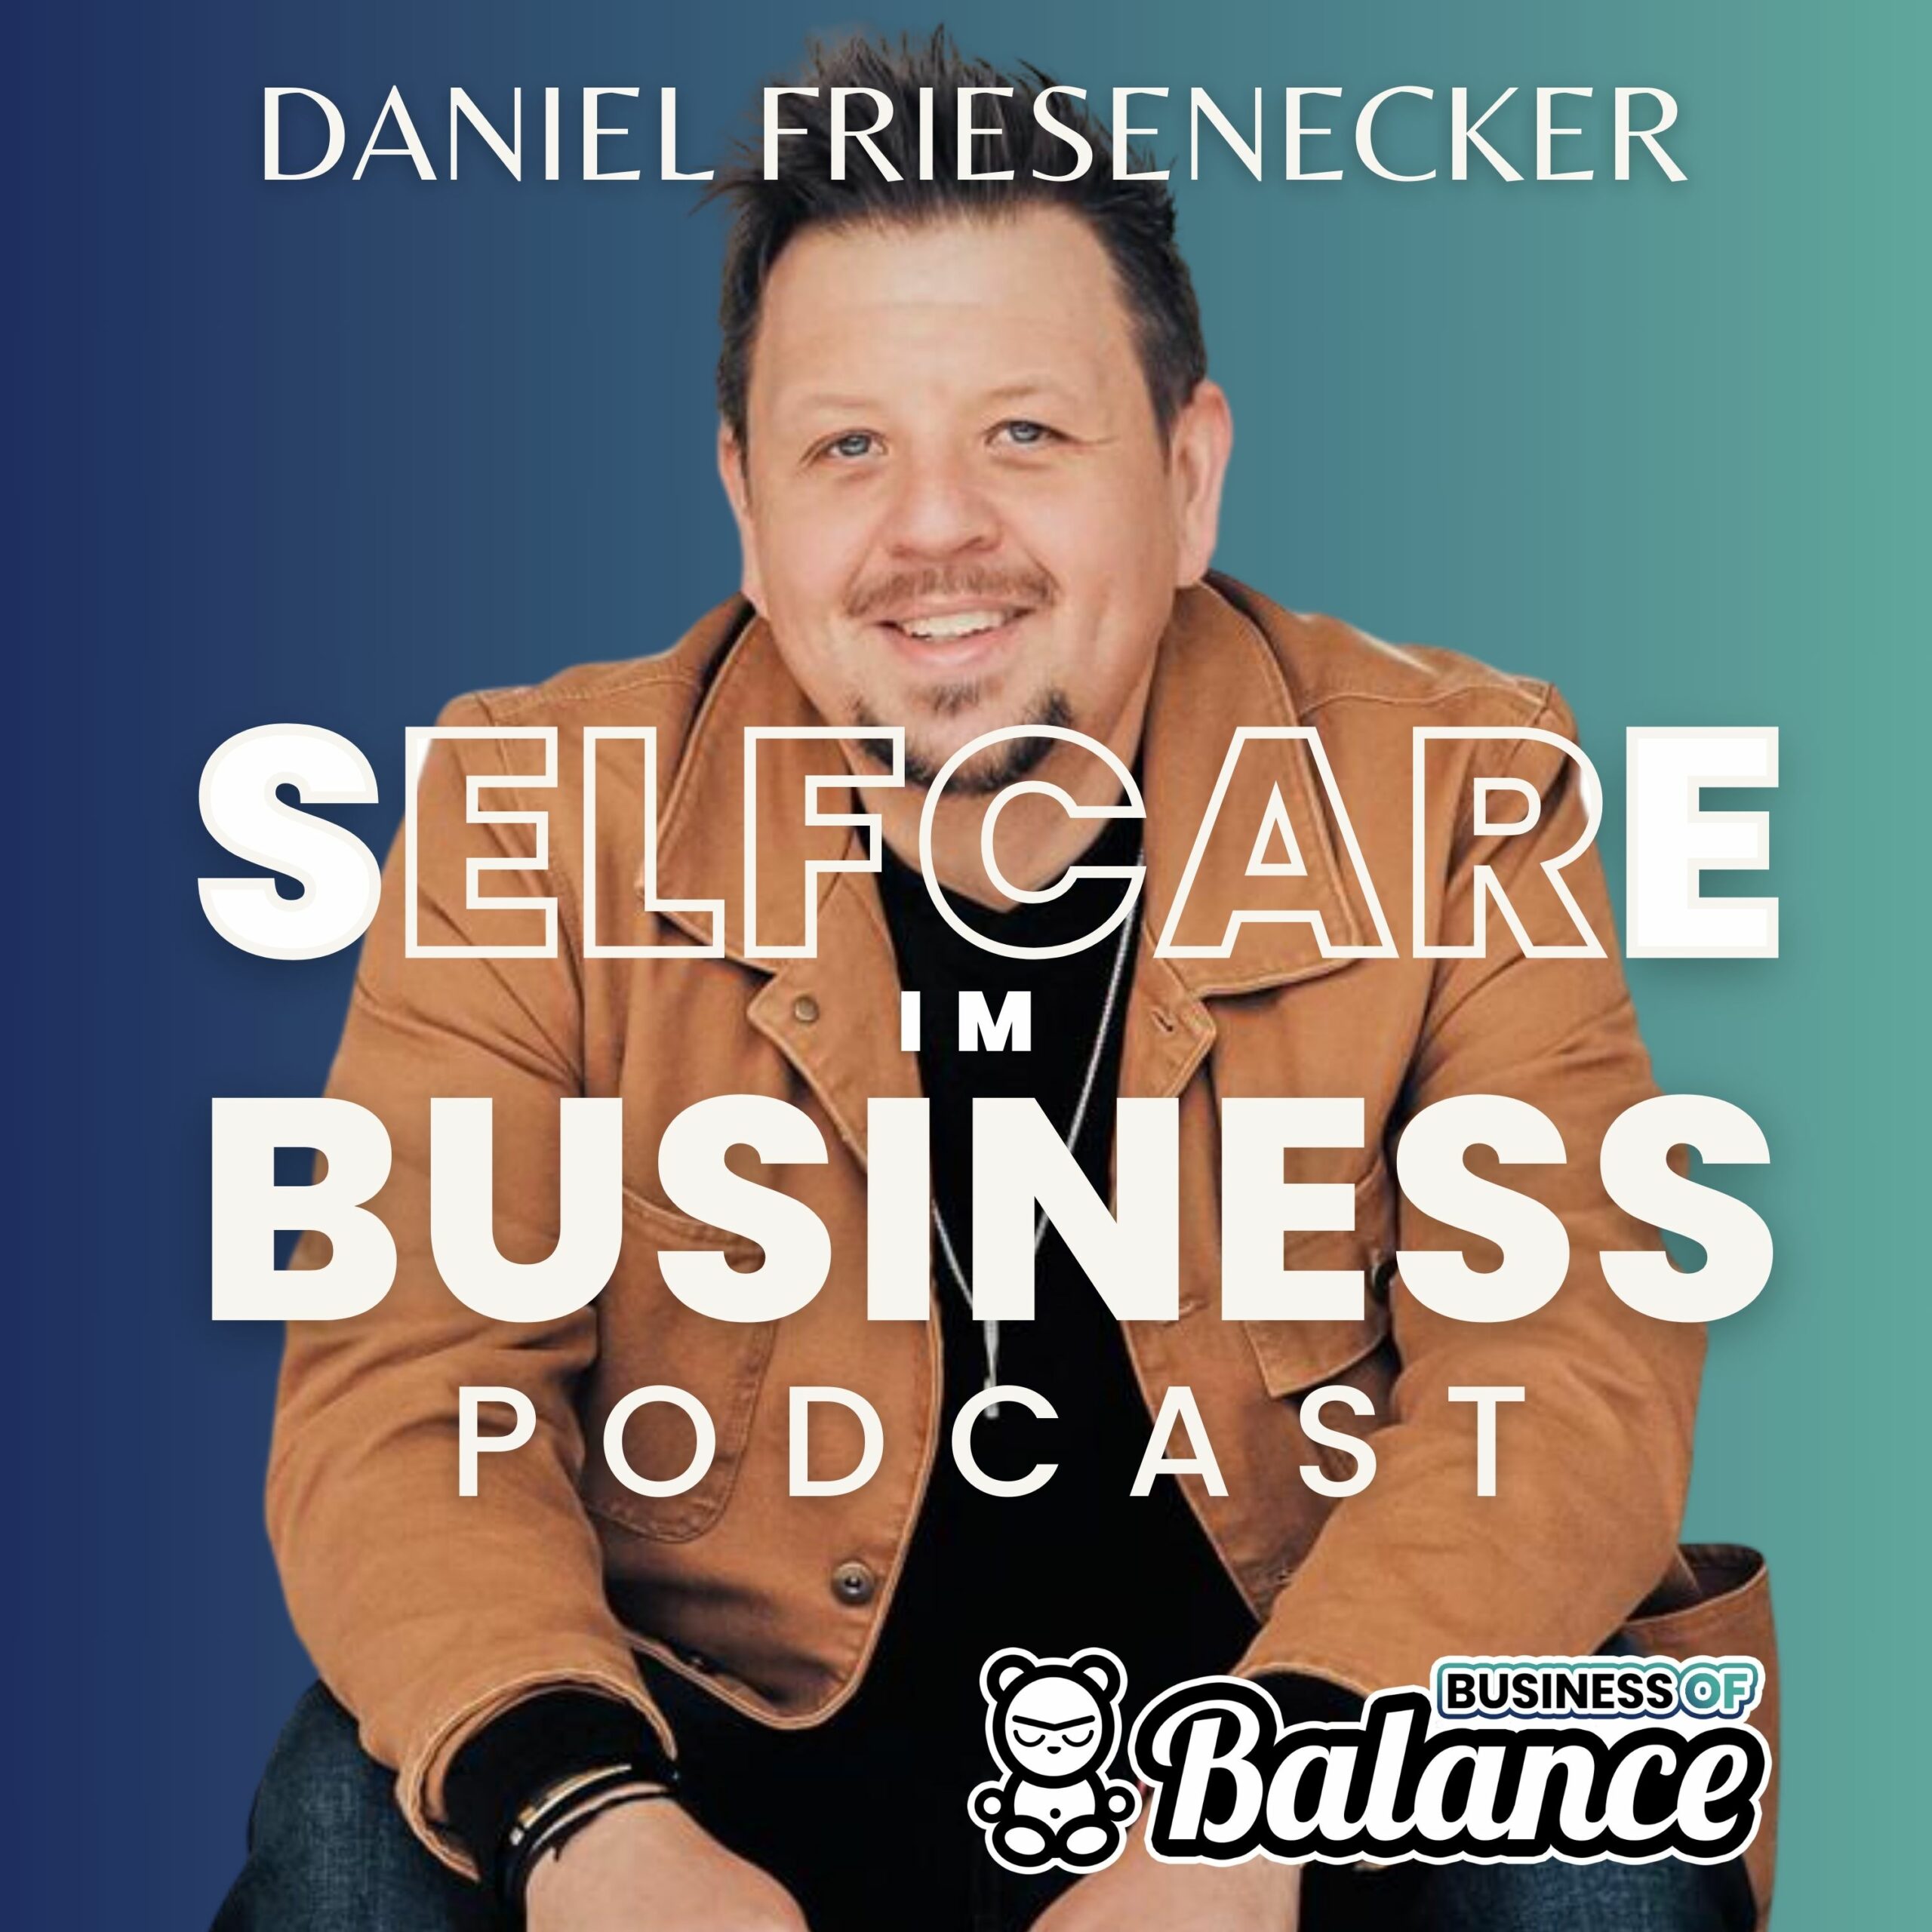 Das ist der Business of Balance Podcast